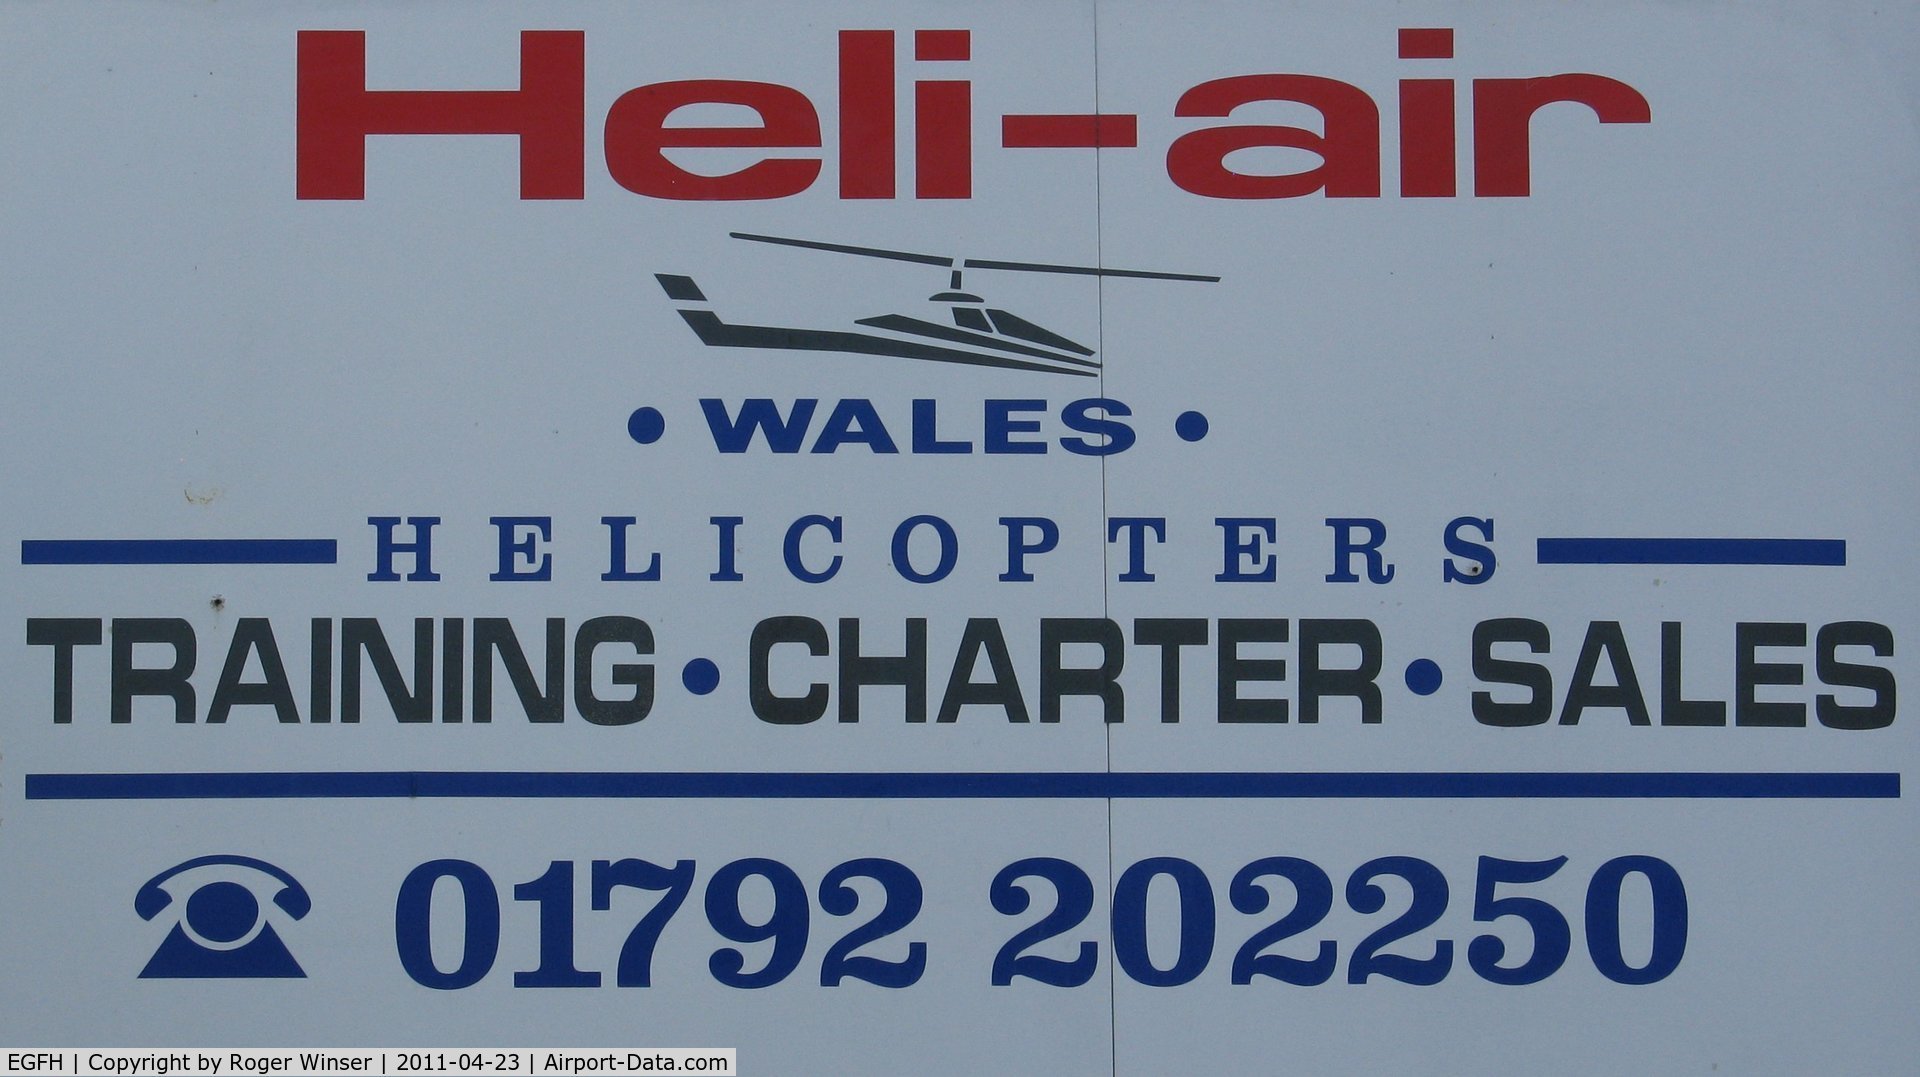 Swansea Airport, Swansea, Wales United Kingdom (EGFH) - Swansea Airport based Heli-Air Wales logo